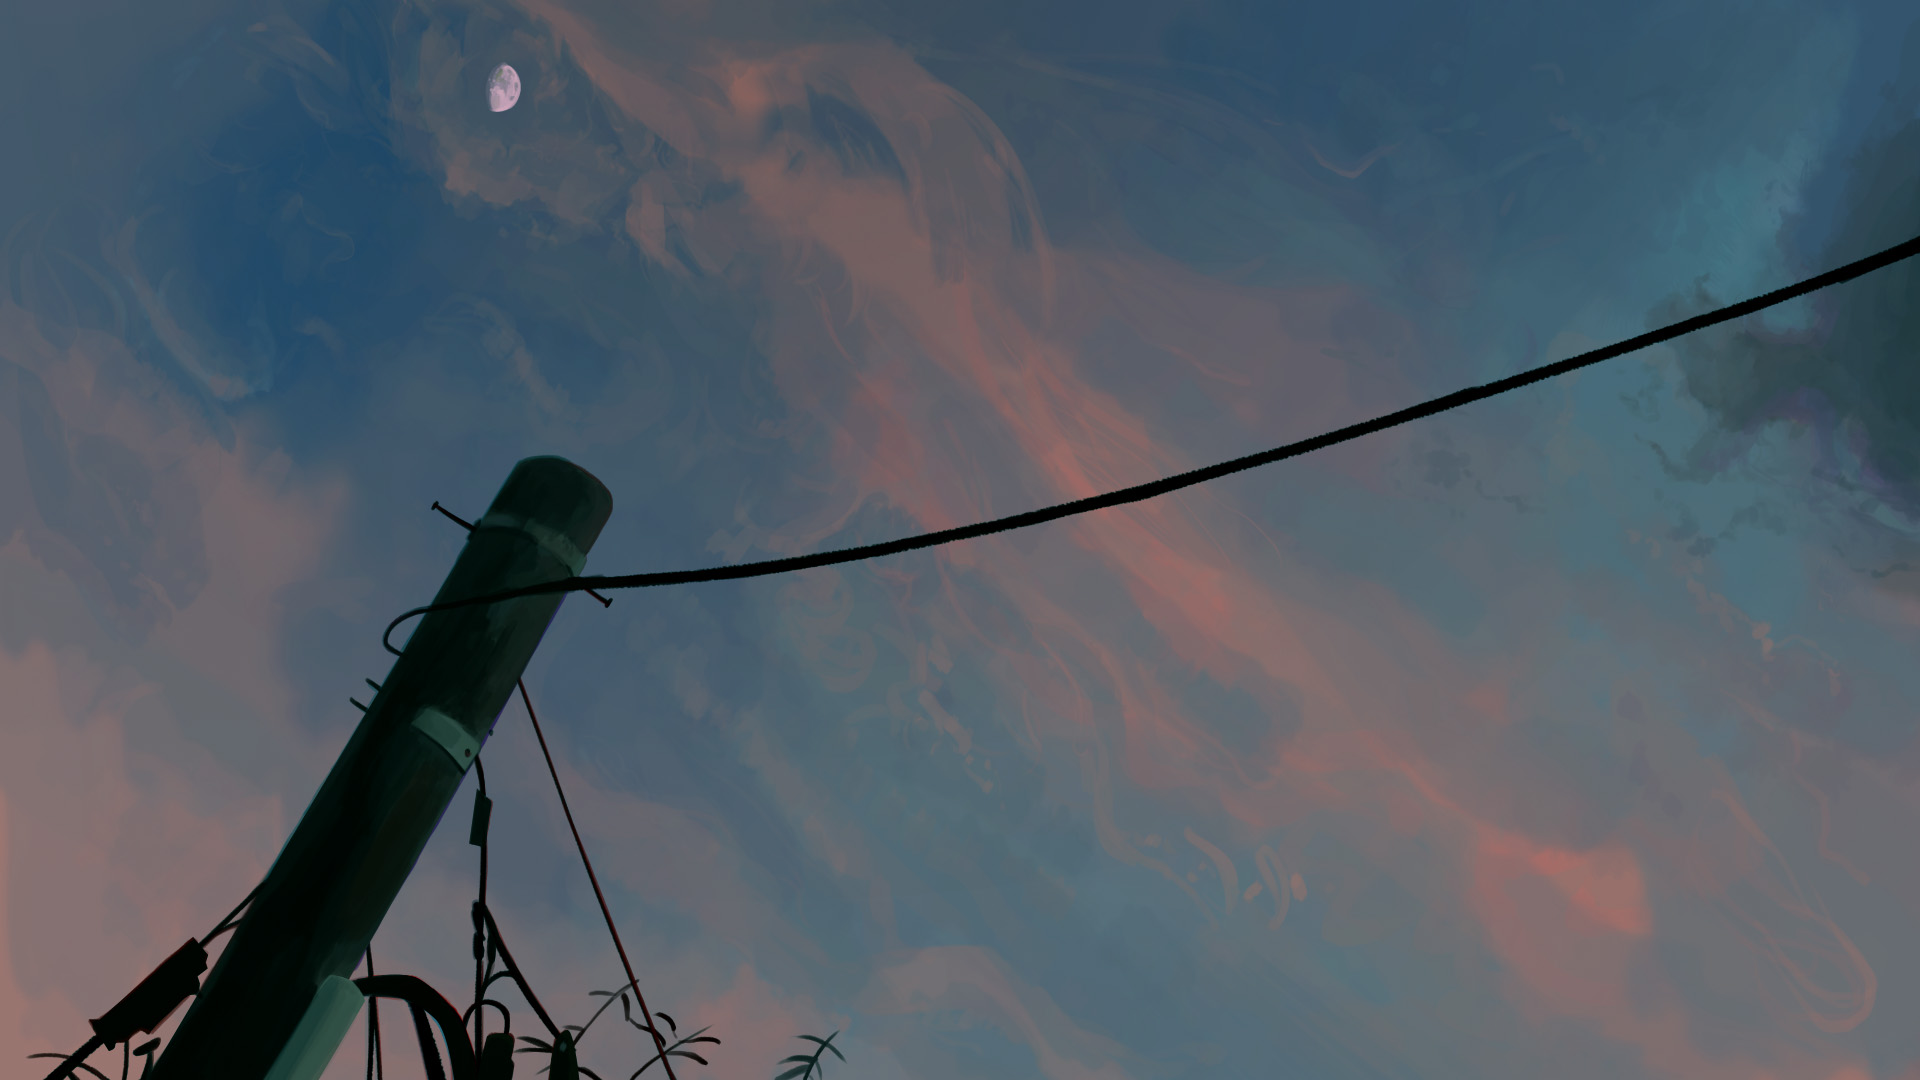 Скачать обои бесплатно Аниме, Небо, Облака, Луна, Оригинал картинка на рабочий стол ПК